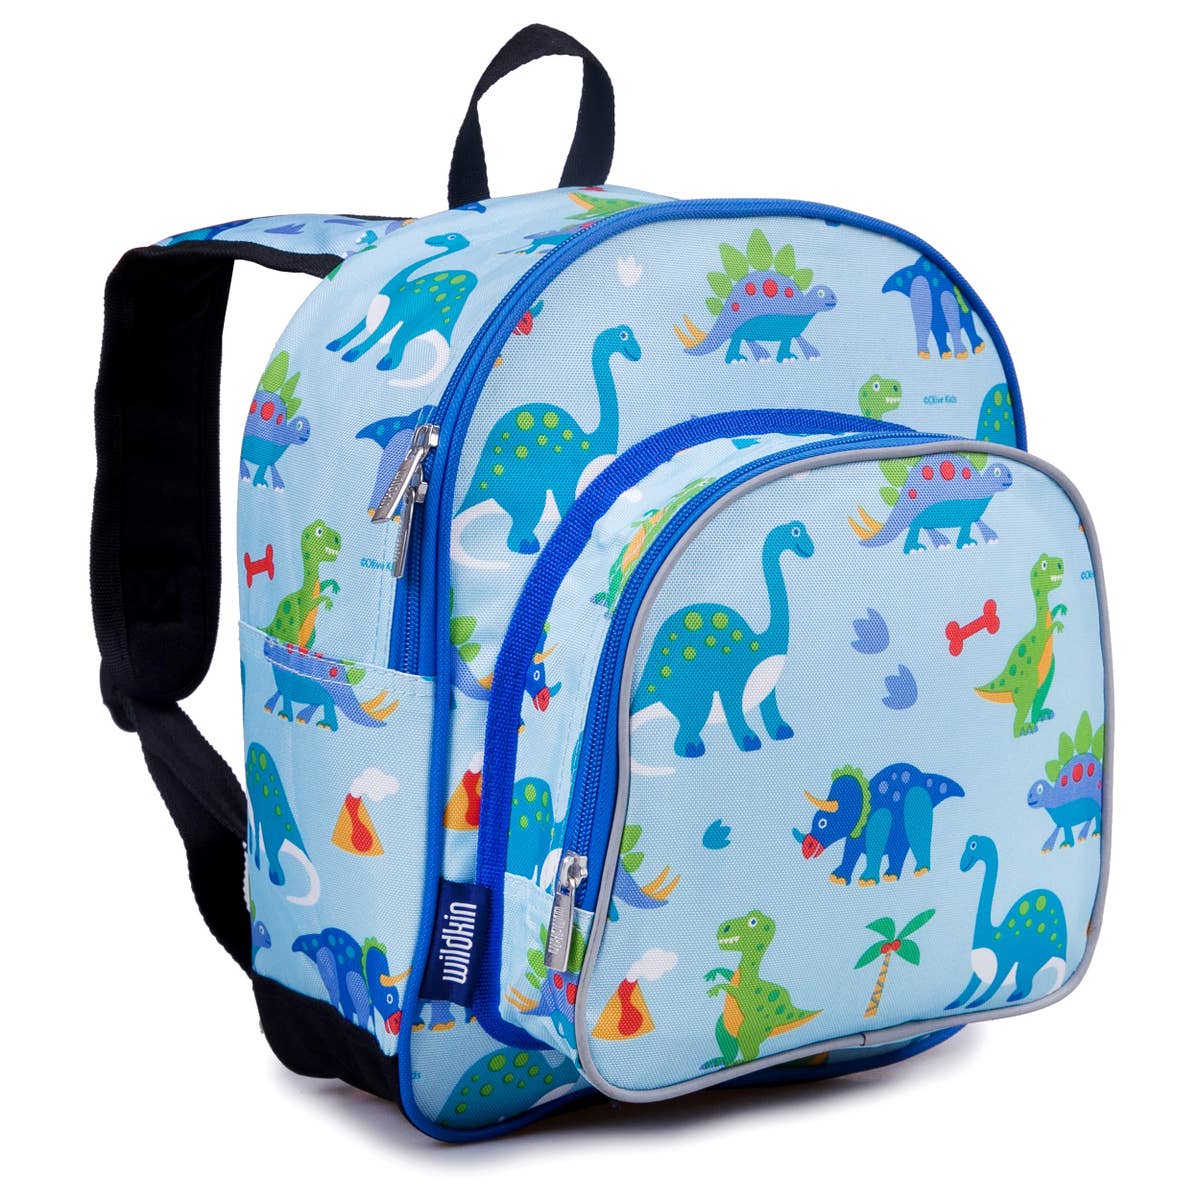 Wildkin 12 inch Backpack - Dinosaur Land